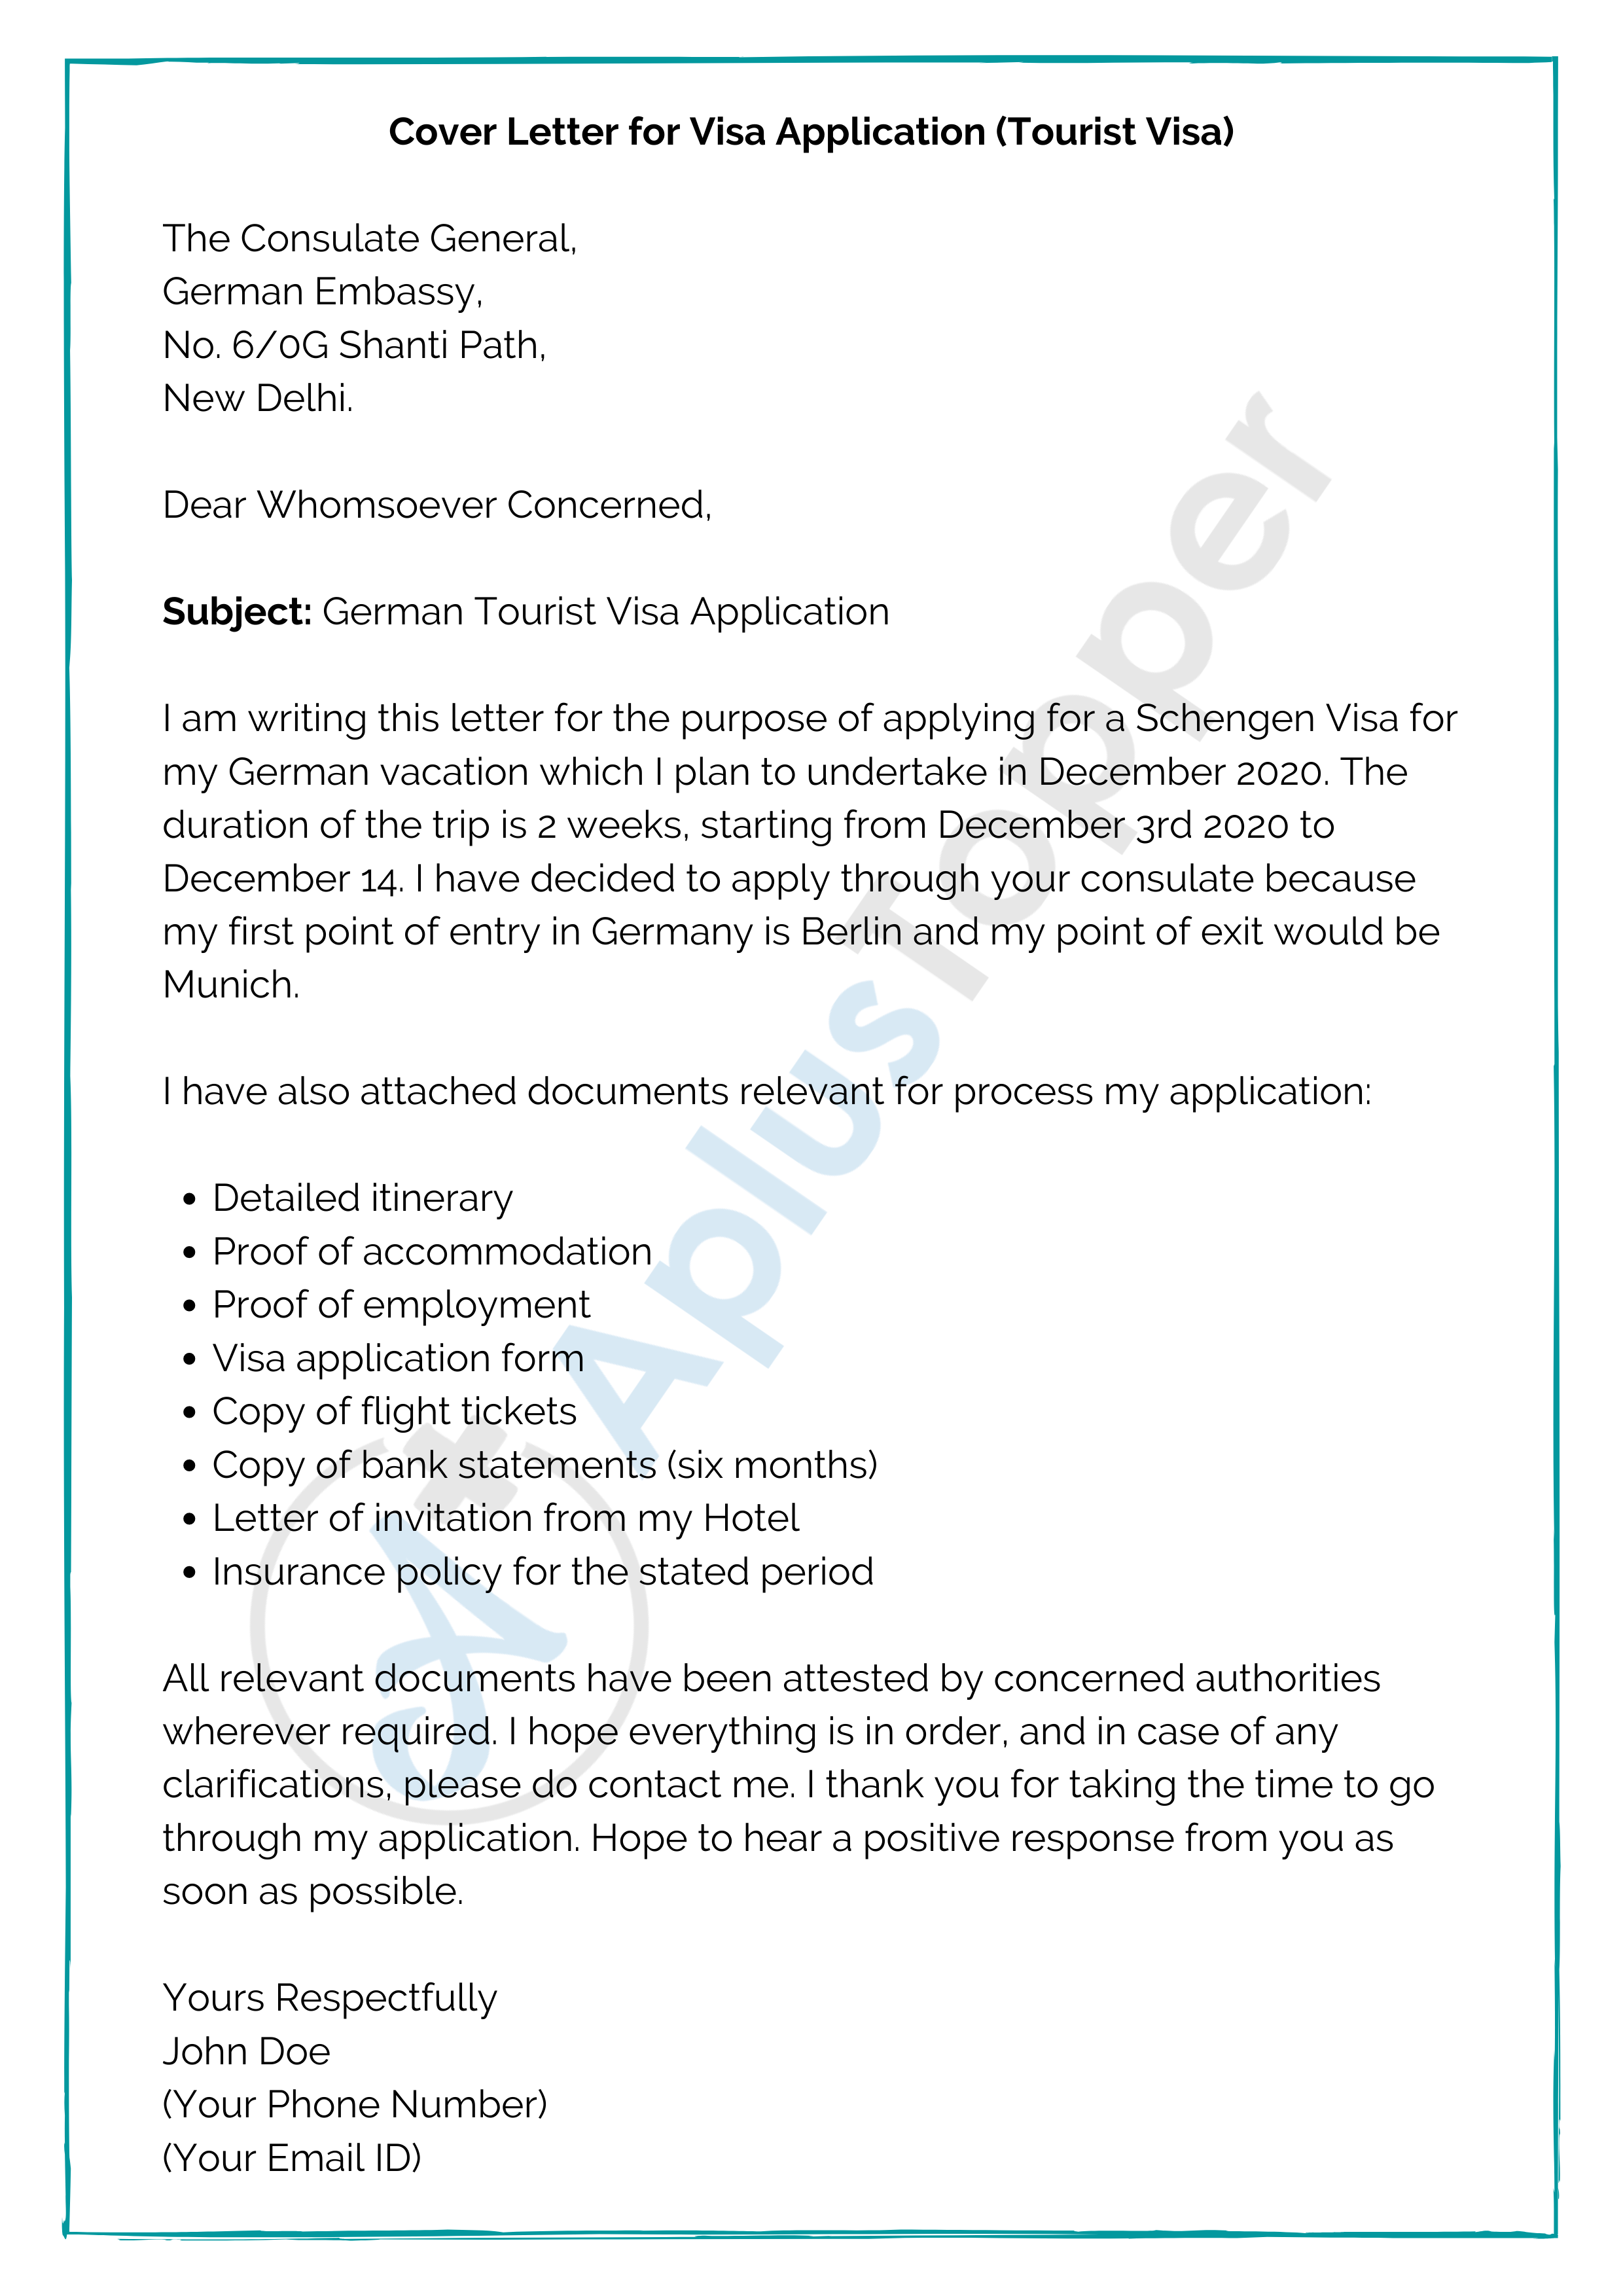 sample cover letter for tourist visa application schengen switzerland